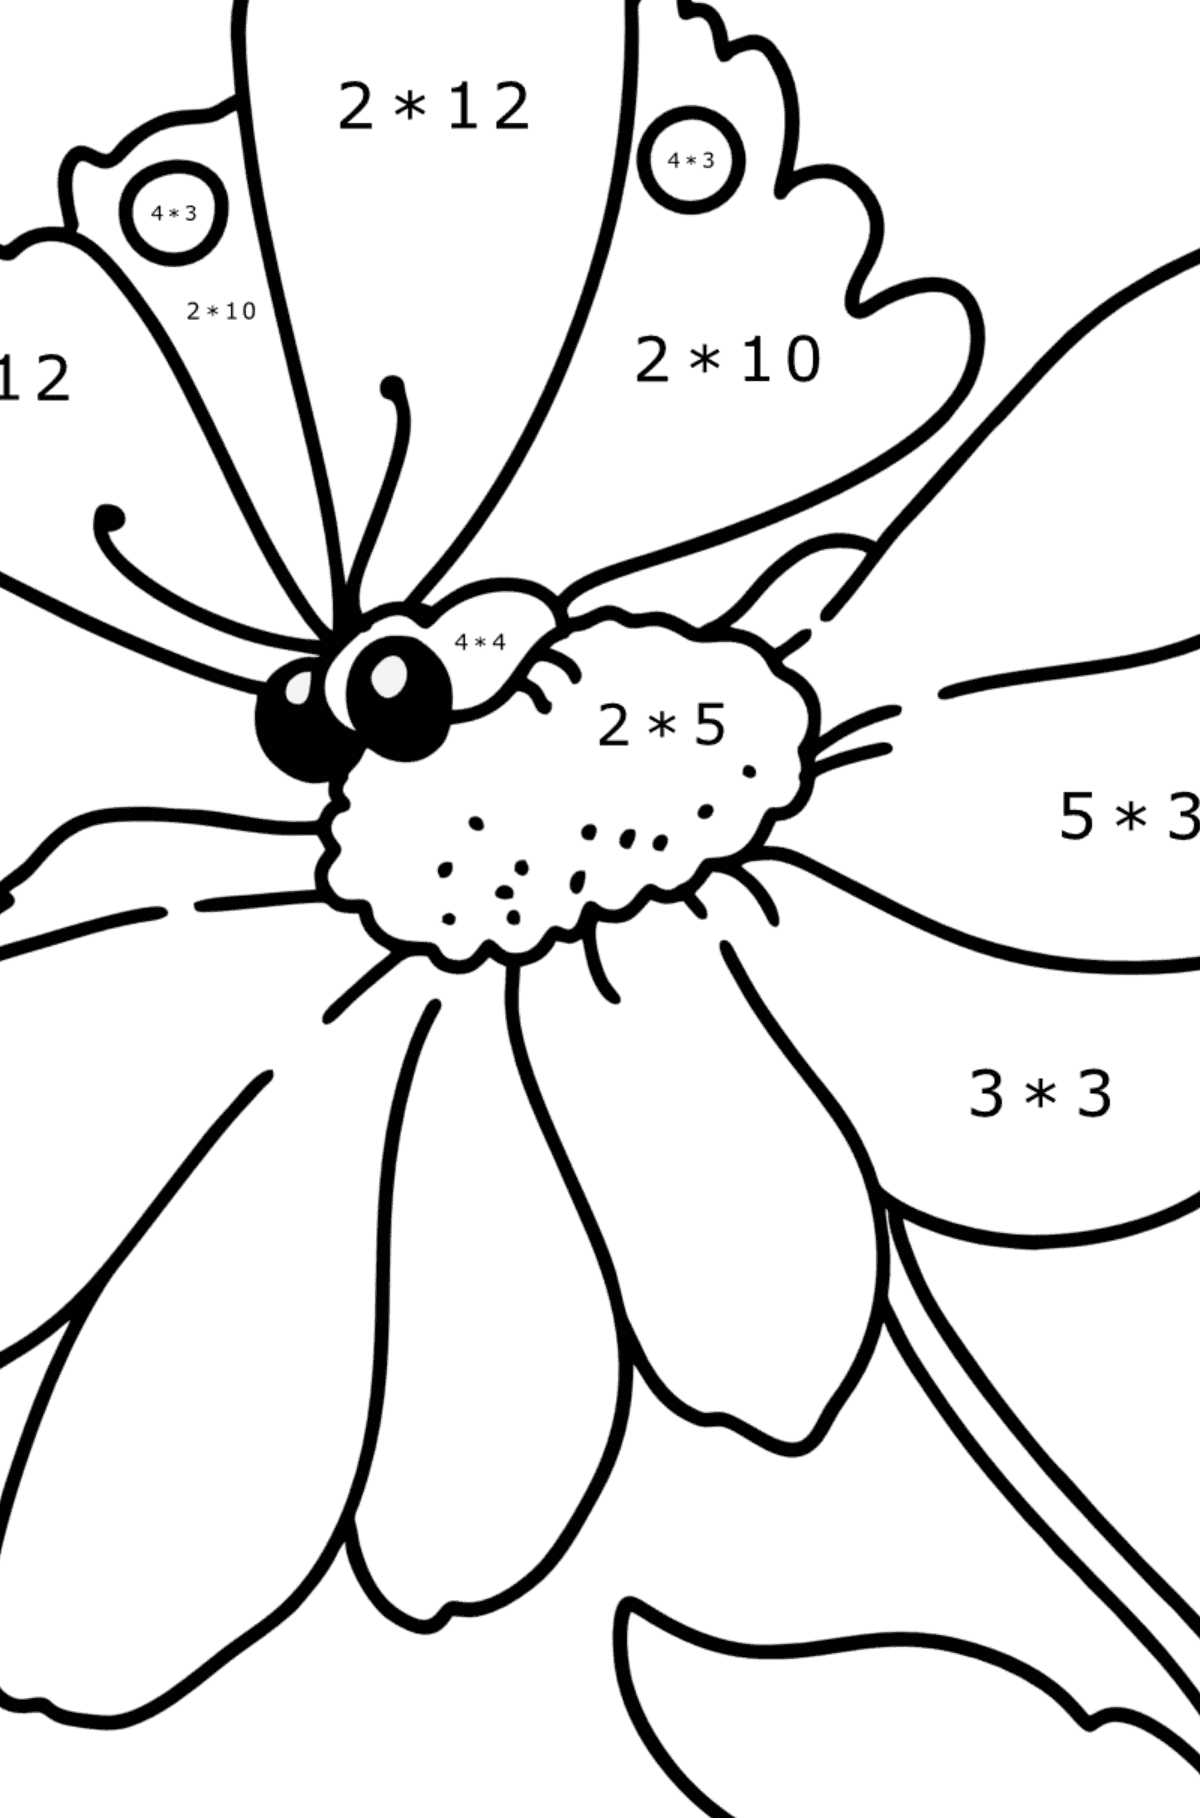 Ausmalbild Sommer - Blumen und Schmetterling - Mathe Ausmalbilder - Multiplikation für Kinder